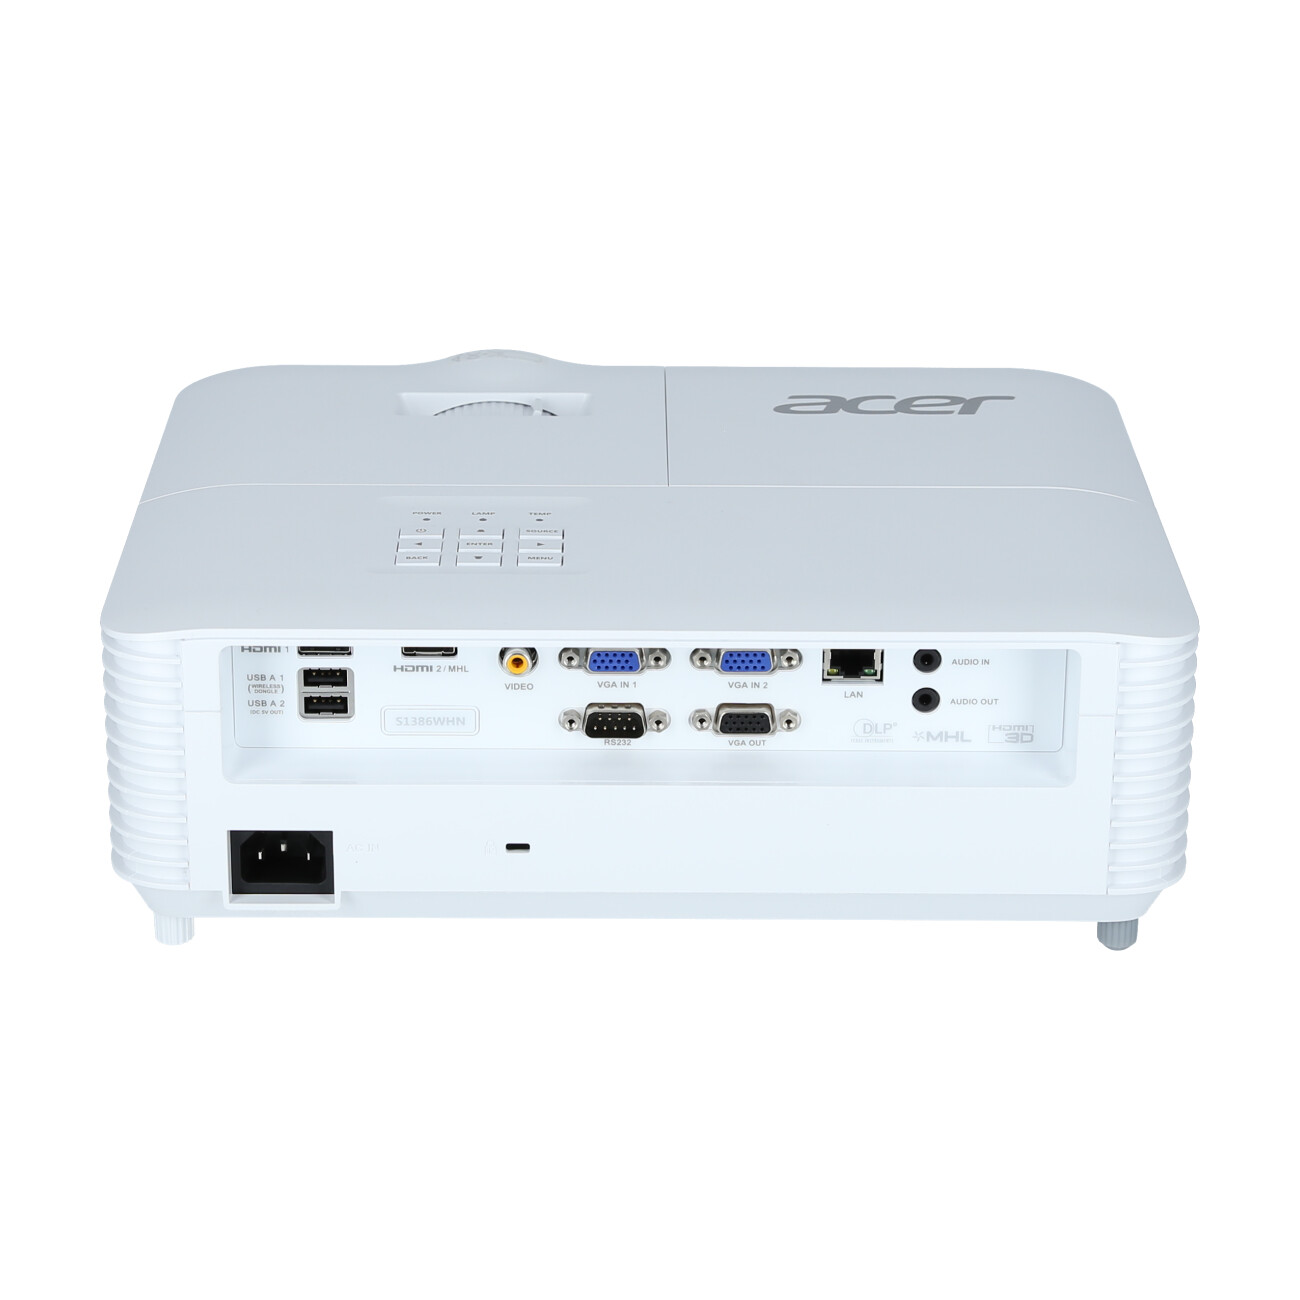 Acer-S1386WHn